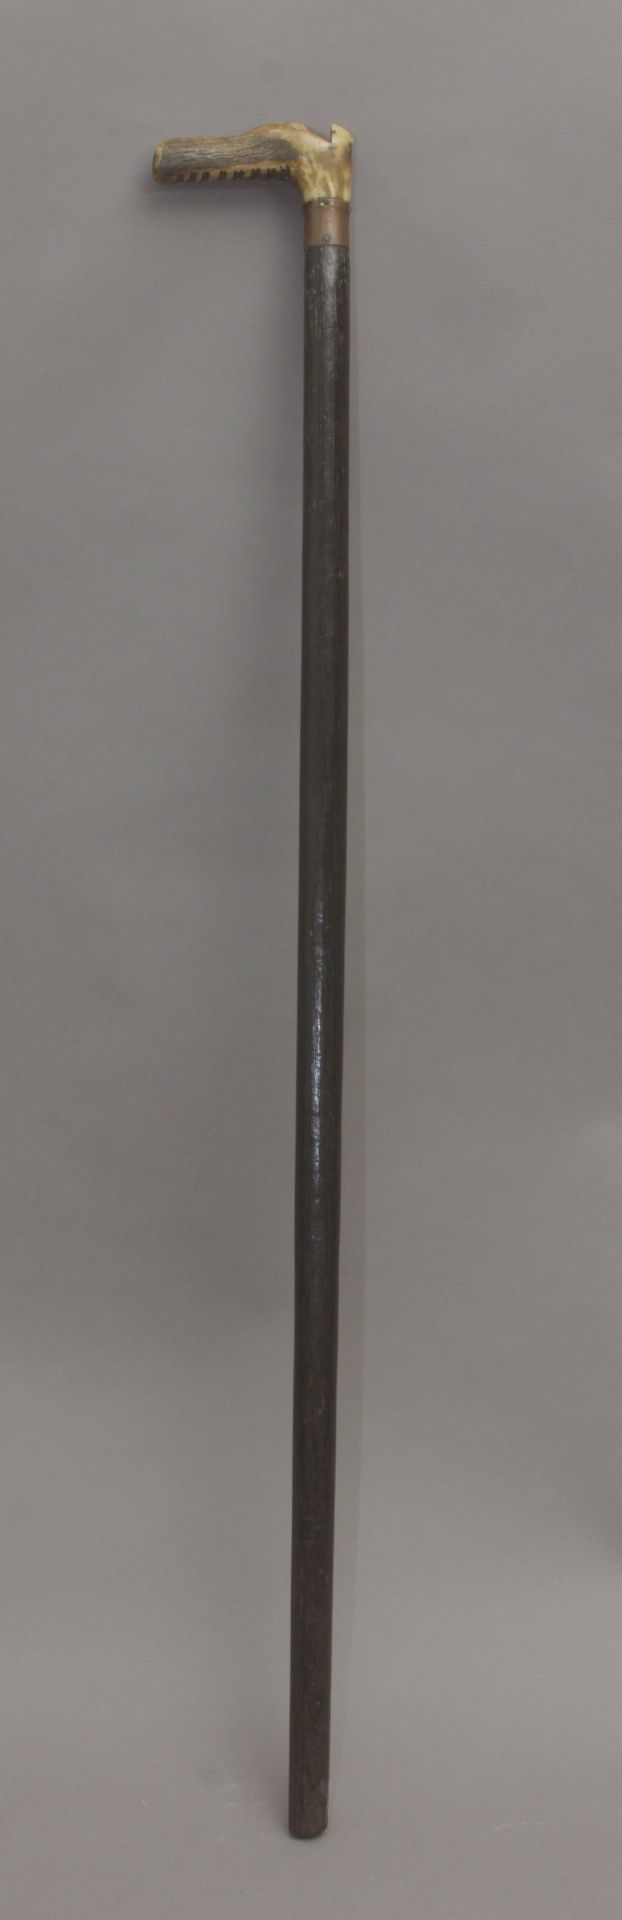 A 19th century walking stick. - Bild 4 aus 6